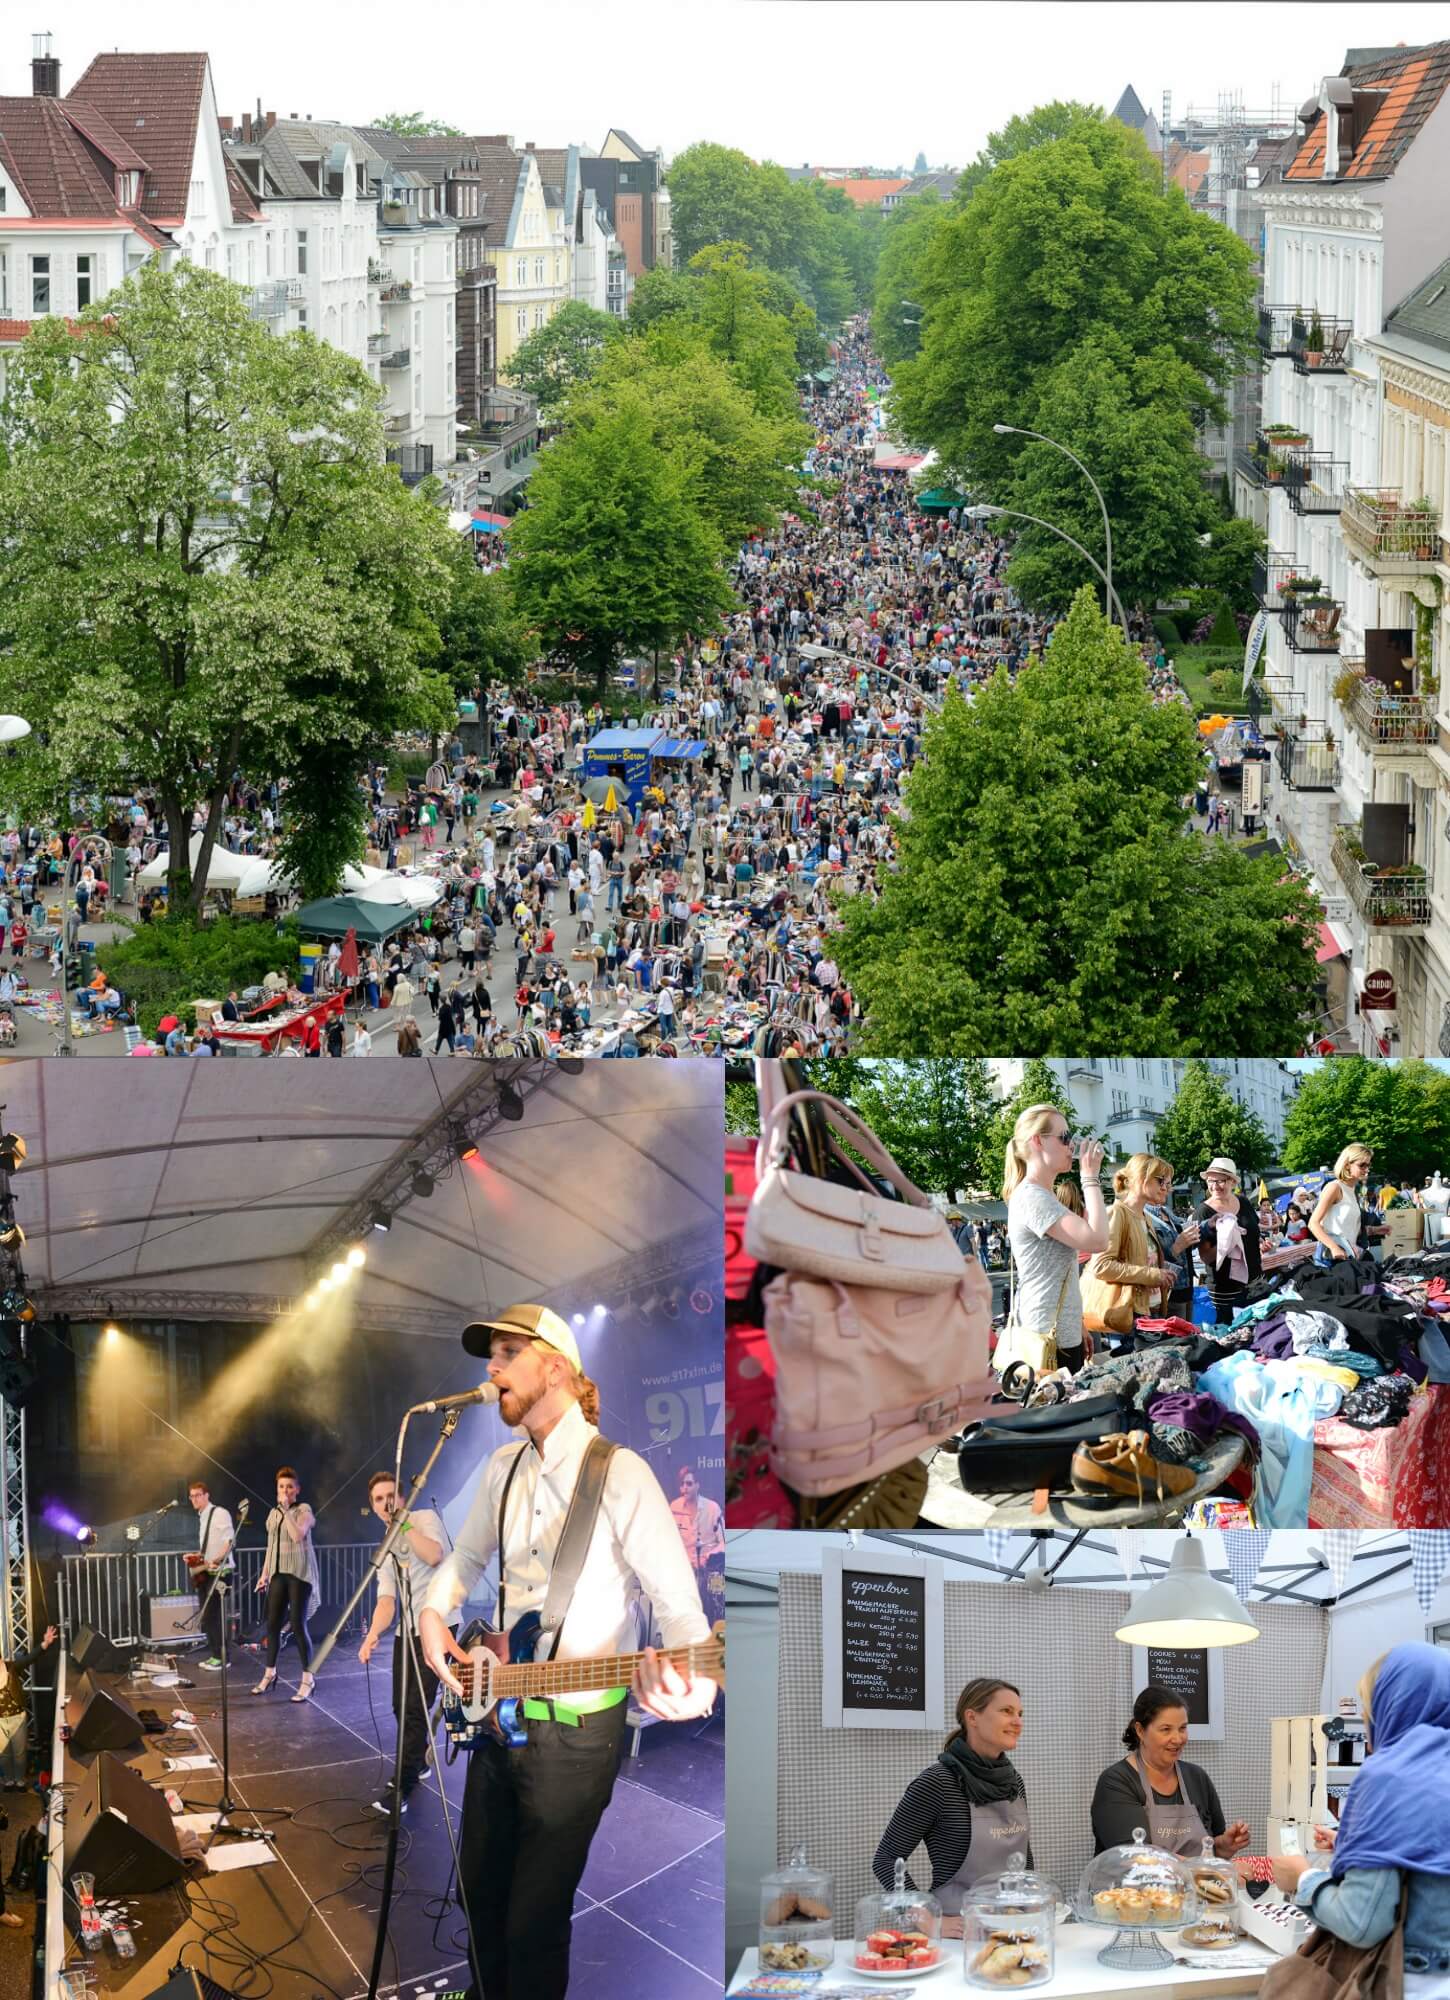 Das Eppendorfer Landstraßenfest hat einiges zu bieten! 2 Bühnen, einen riesigen Flohmarkt, viele Leckereien & das tolle Ambiente!